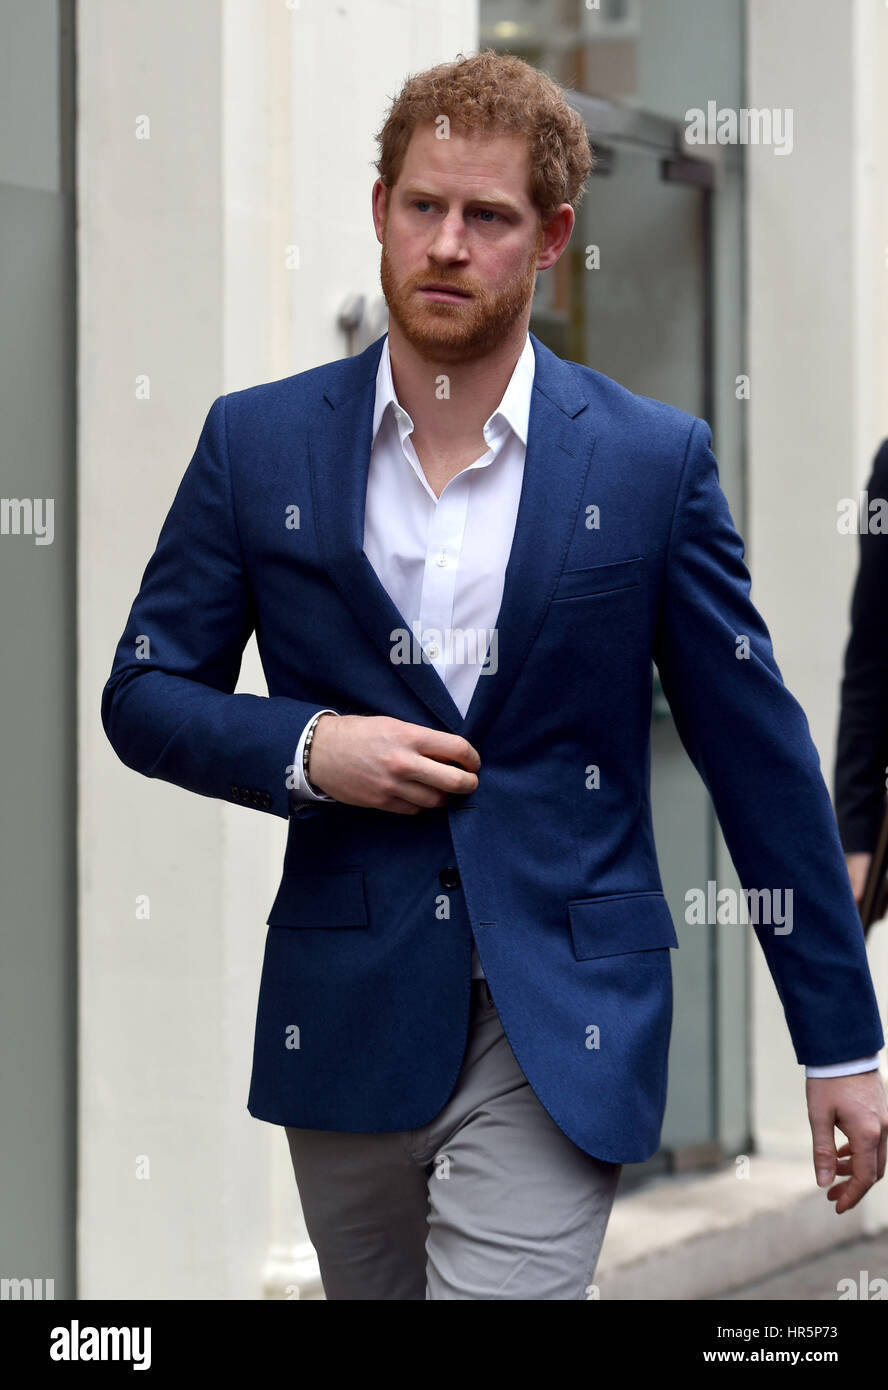 Le prince Harry quitte après la visite à la santé mentale, de services numériques grand mur blanc, à Londres. Banque D'Images